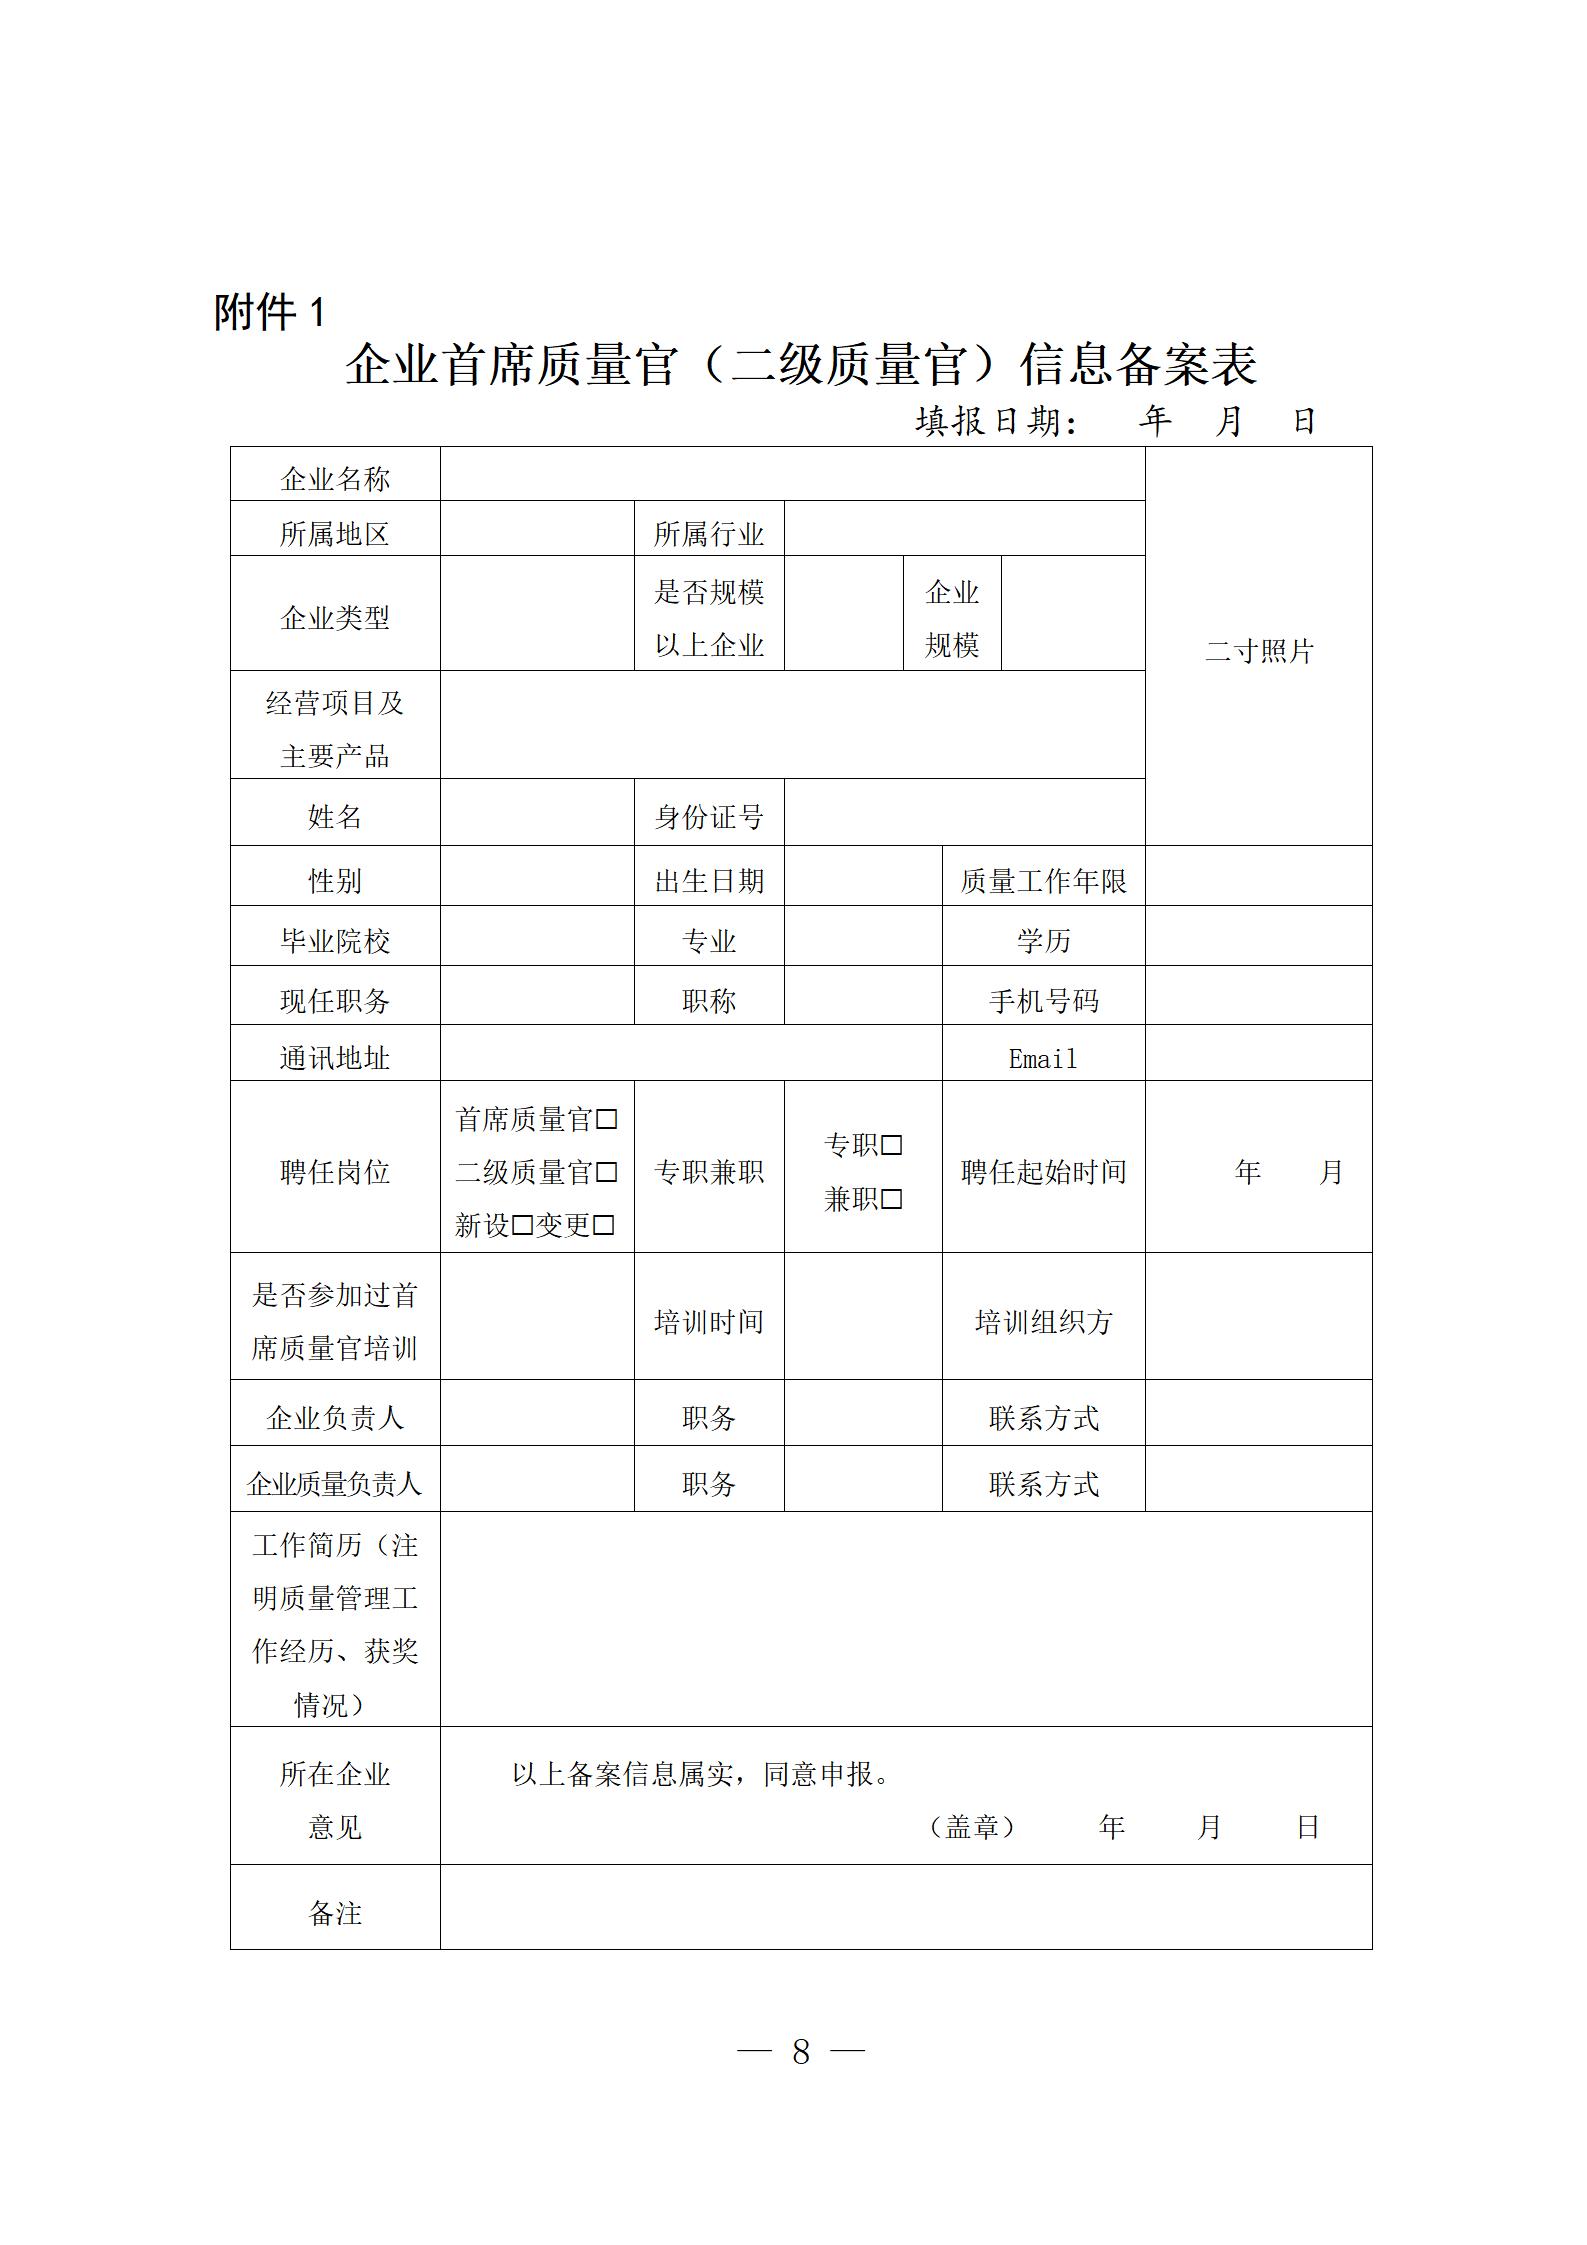 3辽宁省企业首席质量官制度实施方案(1)_08.jpg